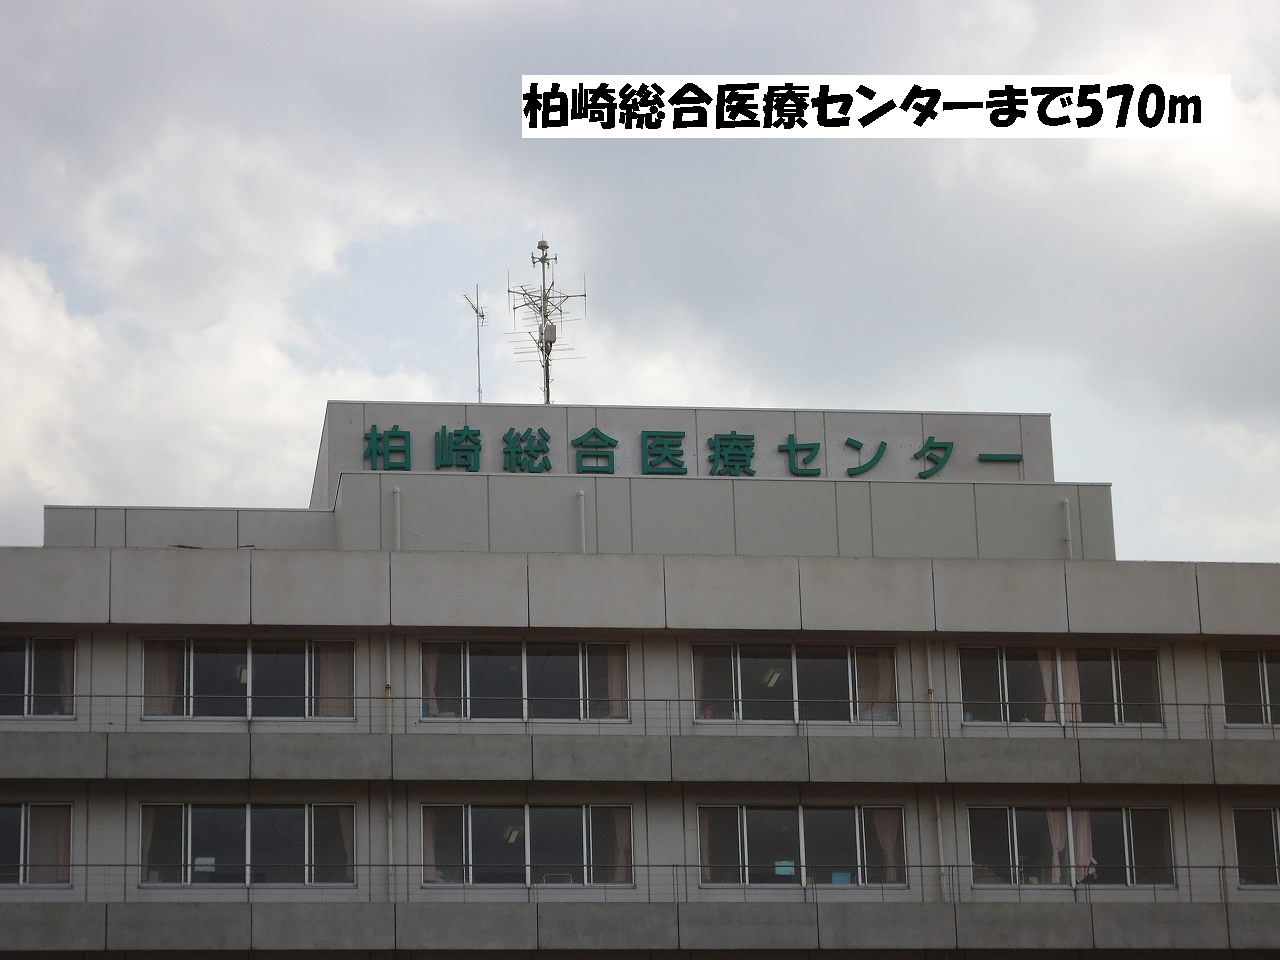 Hospital. Kashiwazaki General Medical Center until the (hospital) 570m